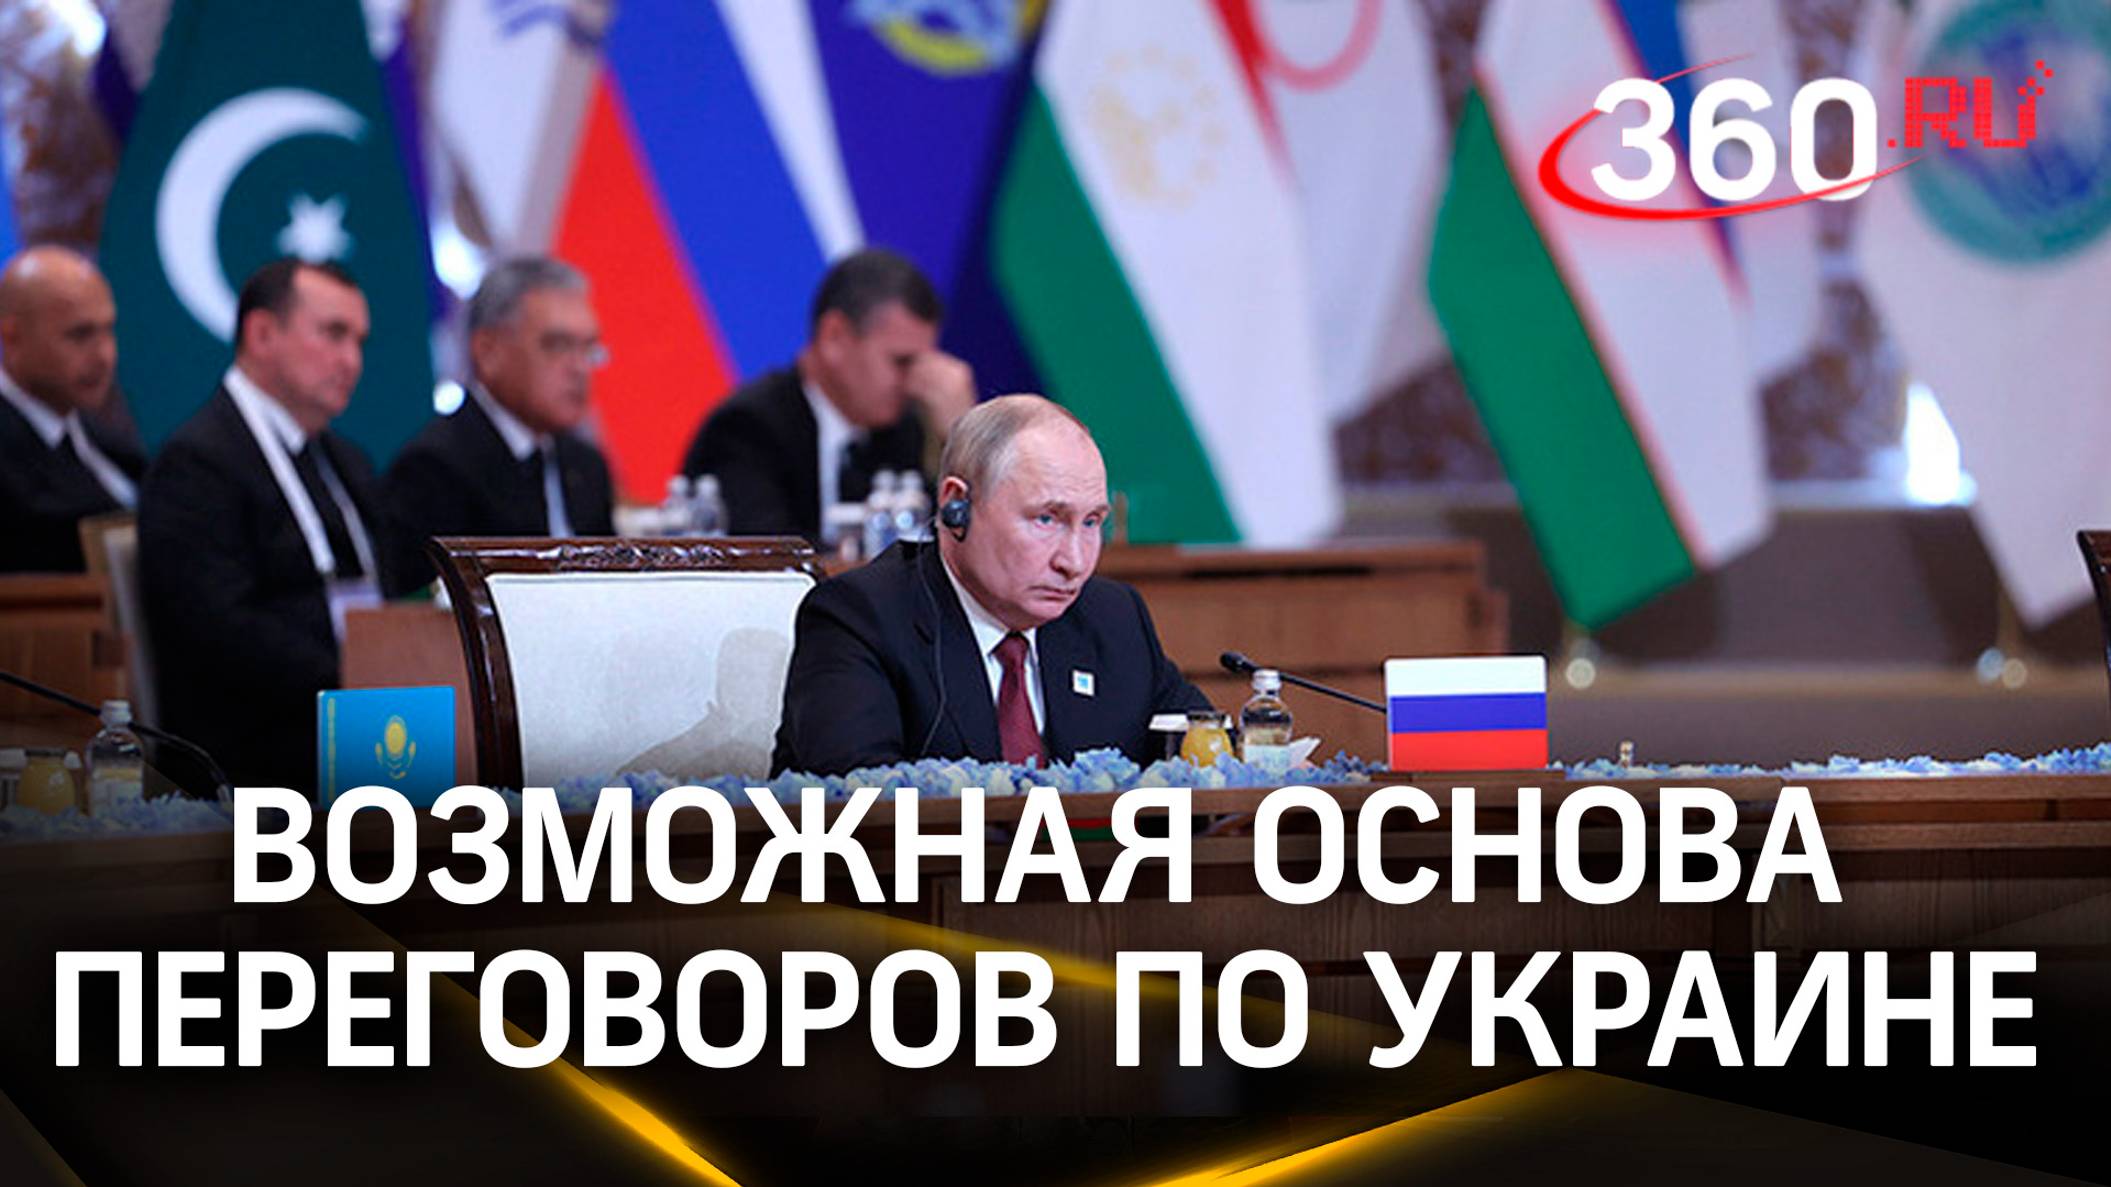 Путин о переговорах по Украине: Рада нелегитимна, а с Трампом - посмотрим